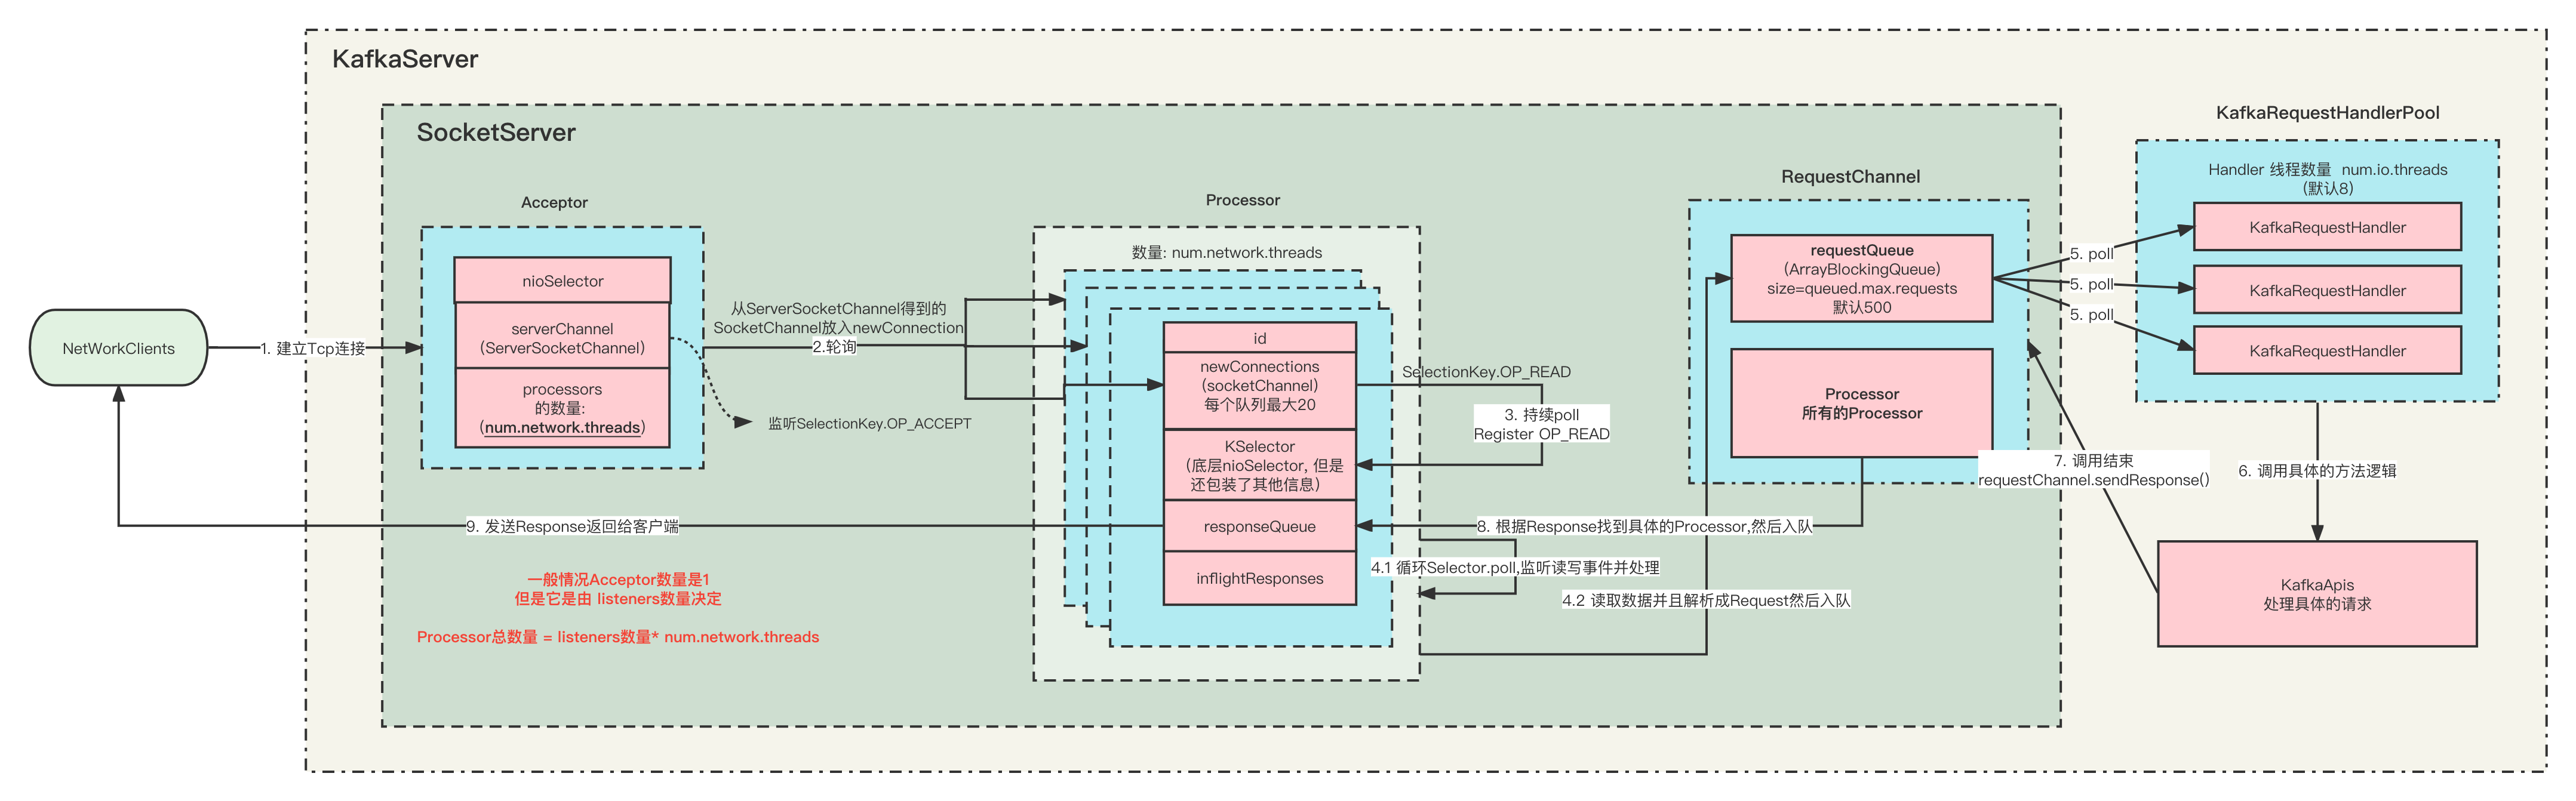 图解Kafka服务端的网络通信模型